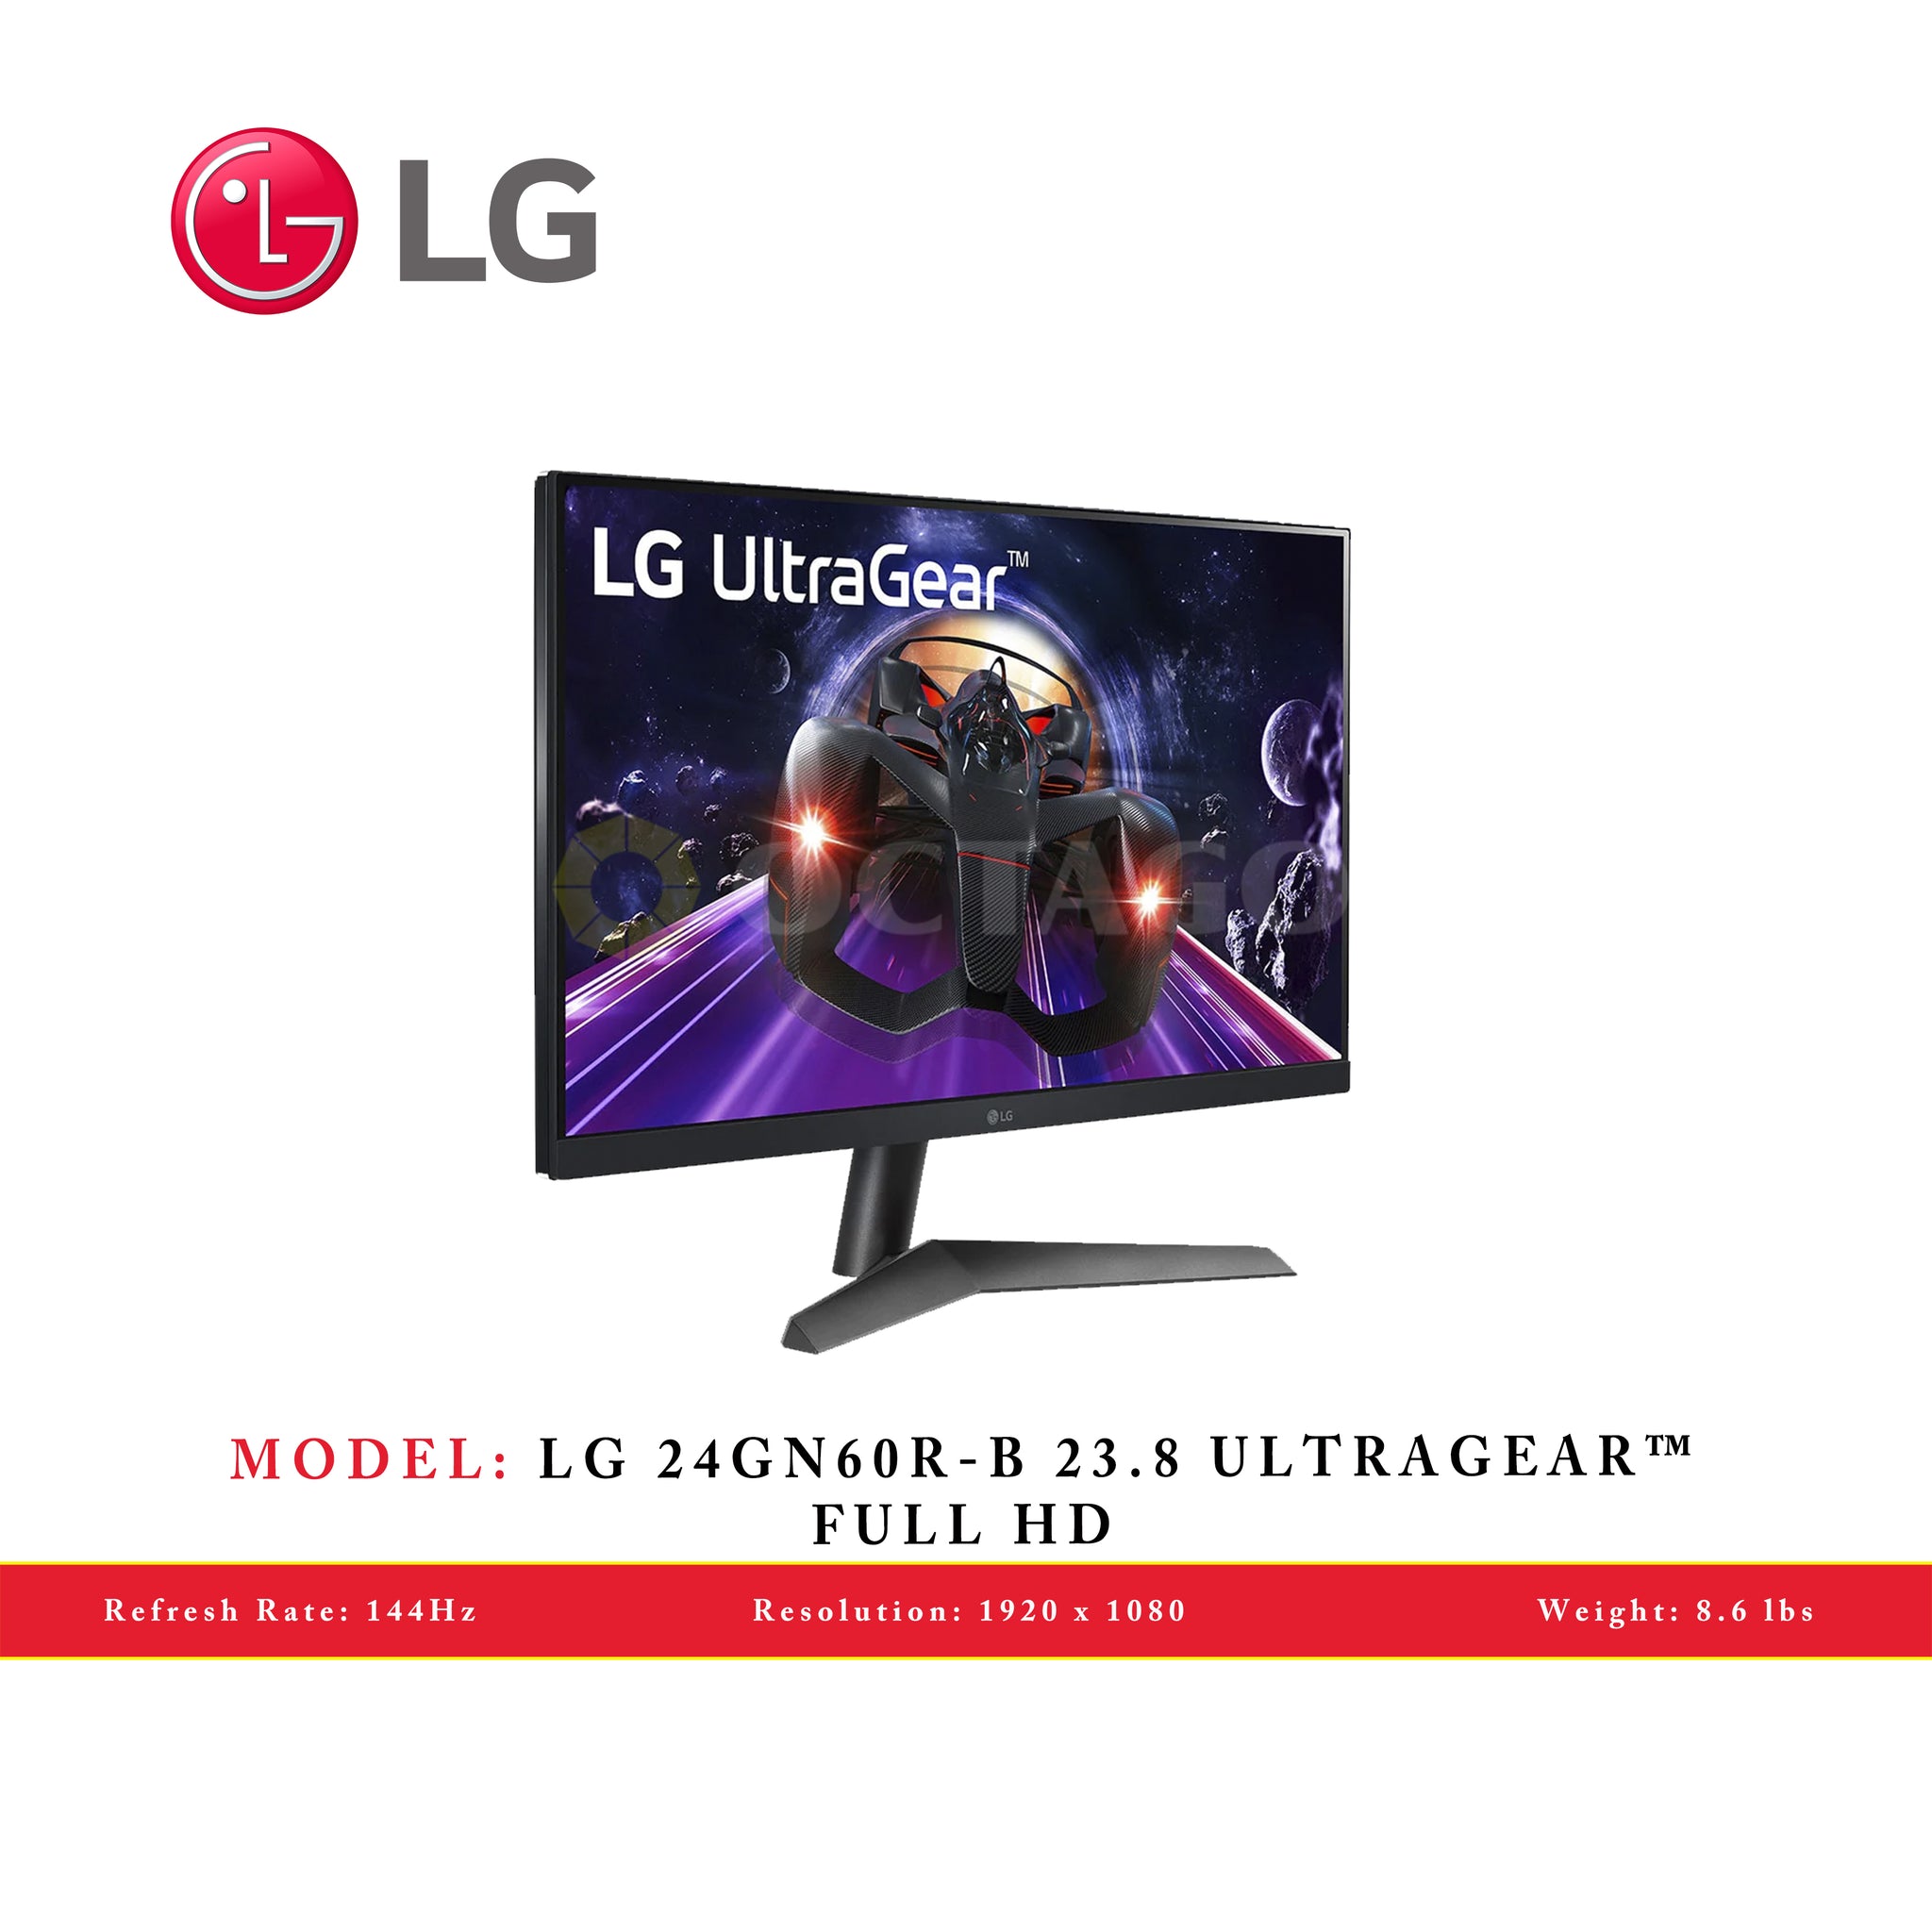 LG 24GN60R-B 23.8 ULTRAGEAR™ FULL HD